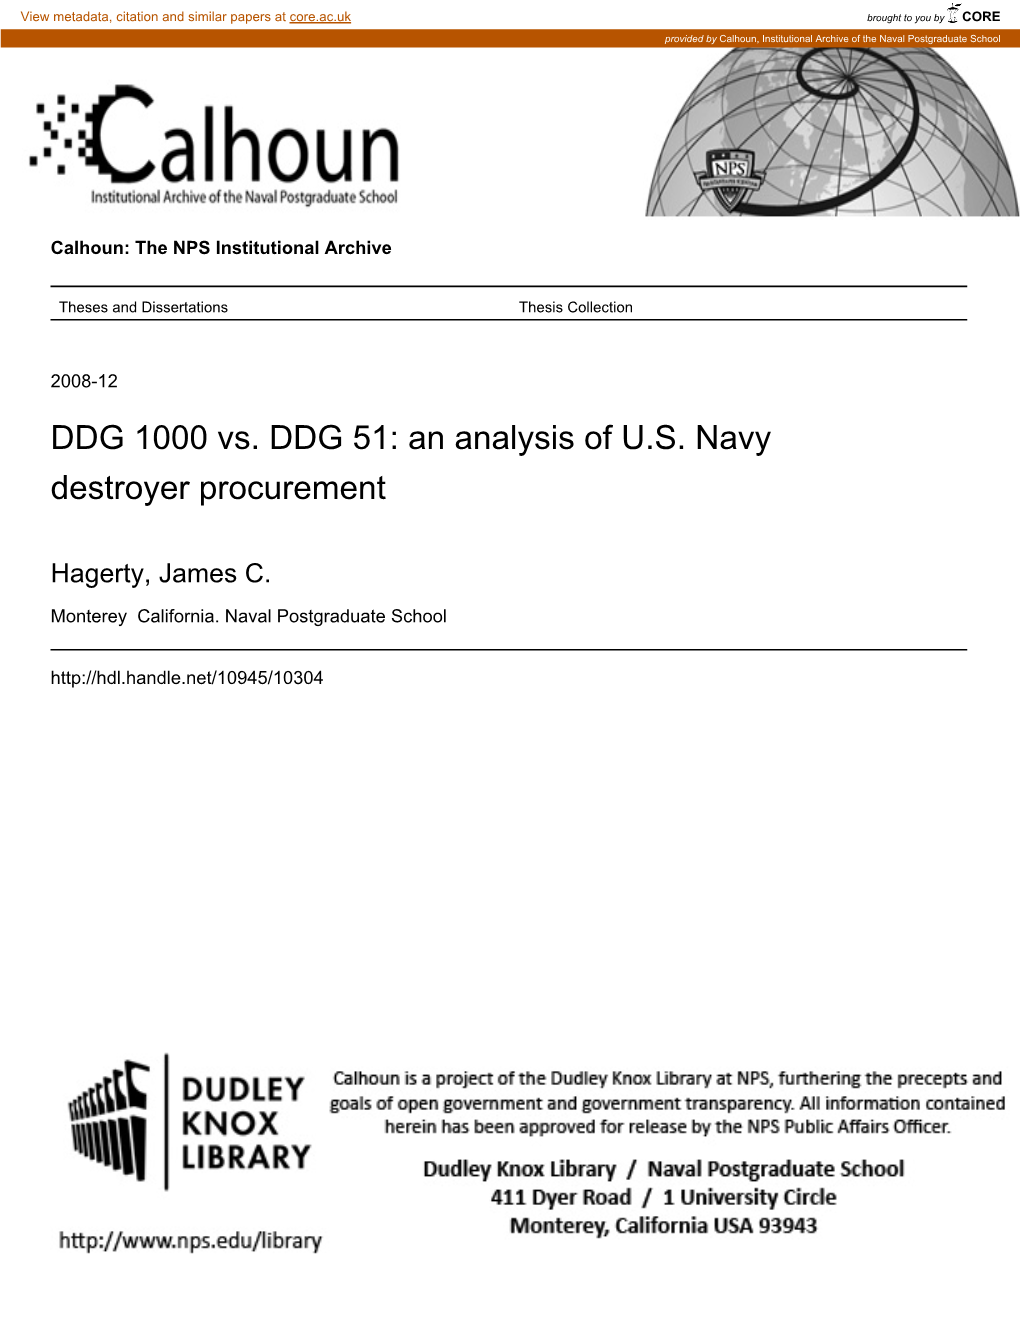 DDG 1000 Vs. DDG 51: an Analysis of U.S. Navy Destroyer Procurement